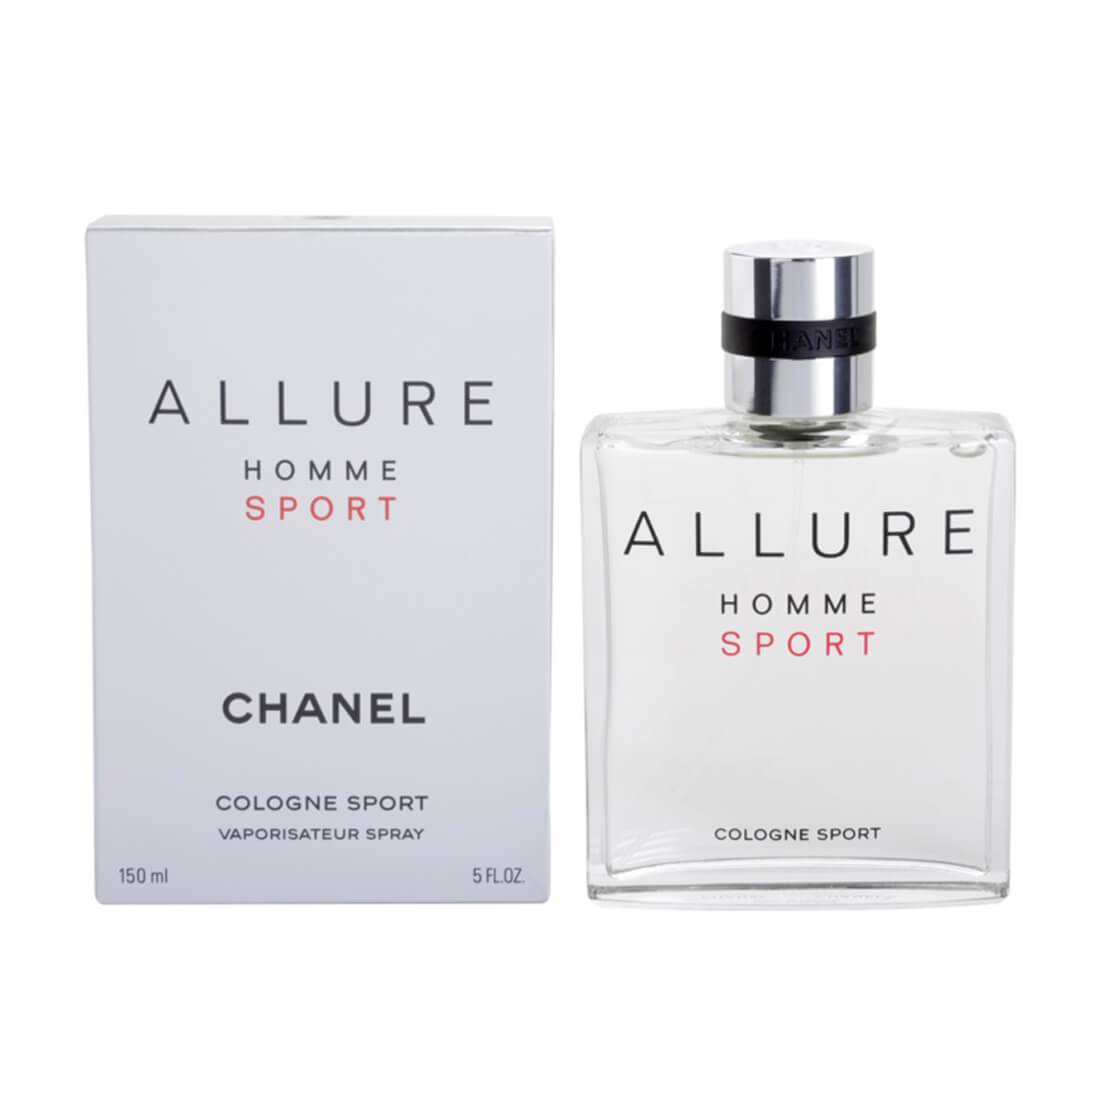 Chanel Allure Homme Sport Cologne Eau De Cologne Perfume For Men – 150ml